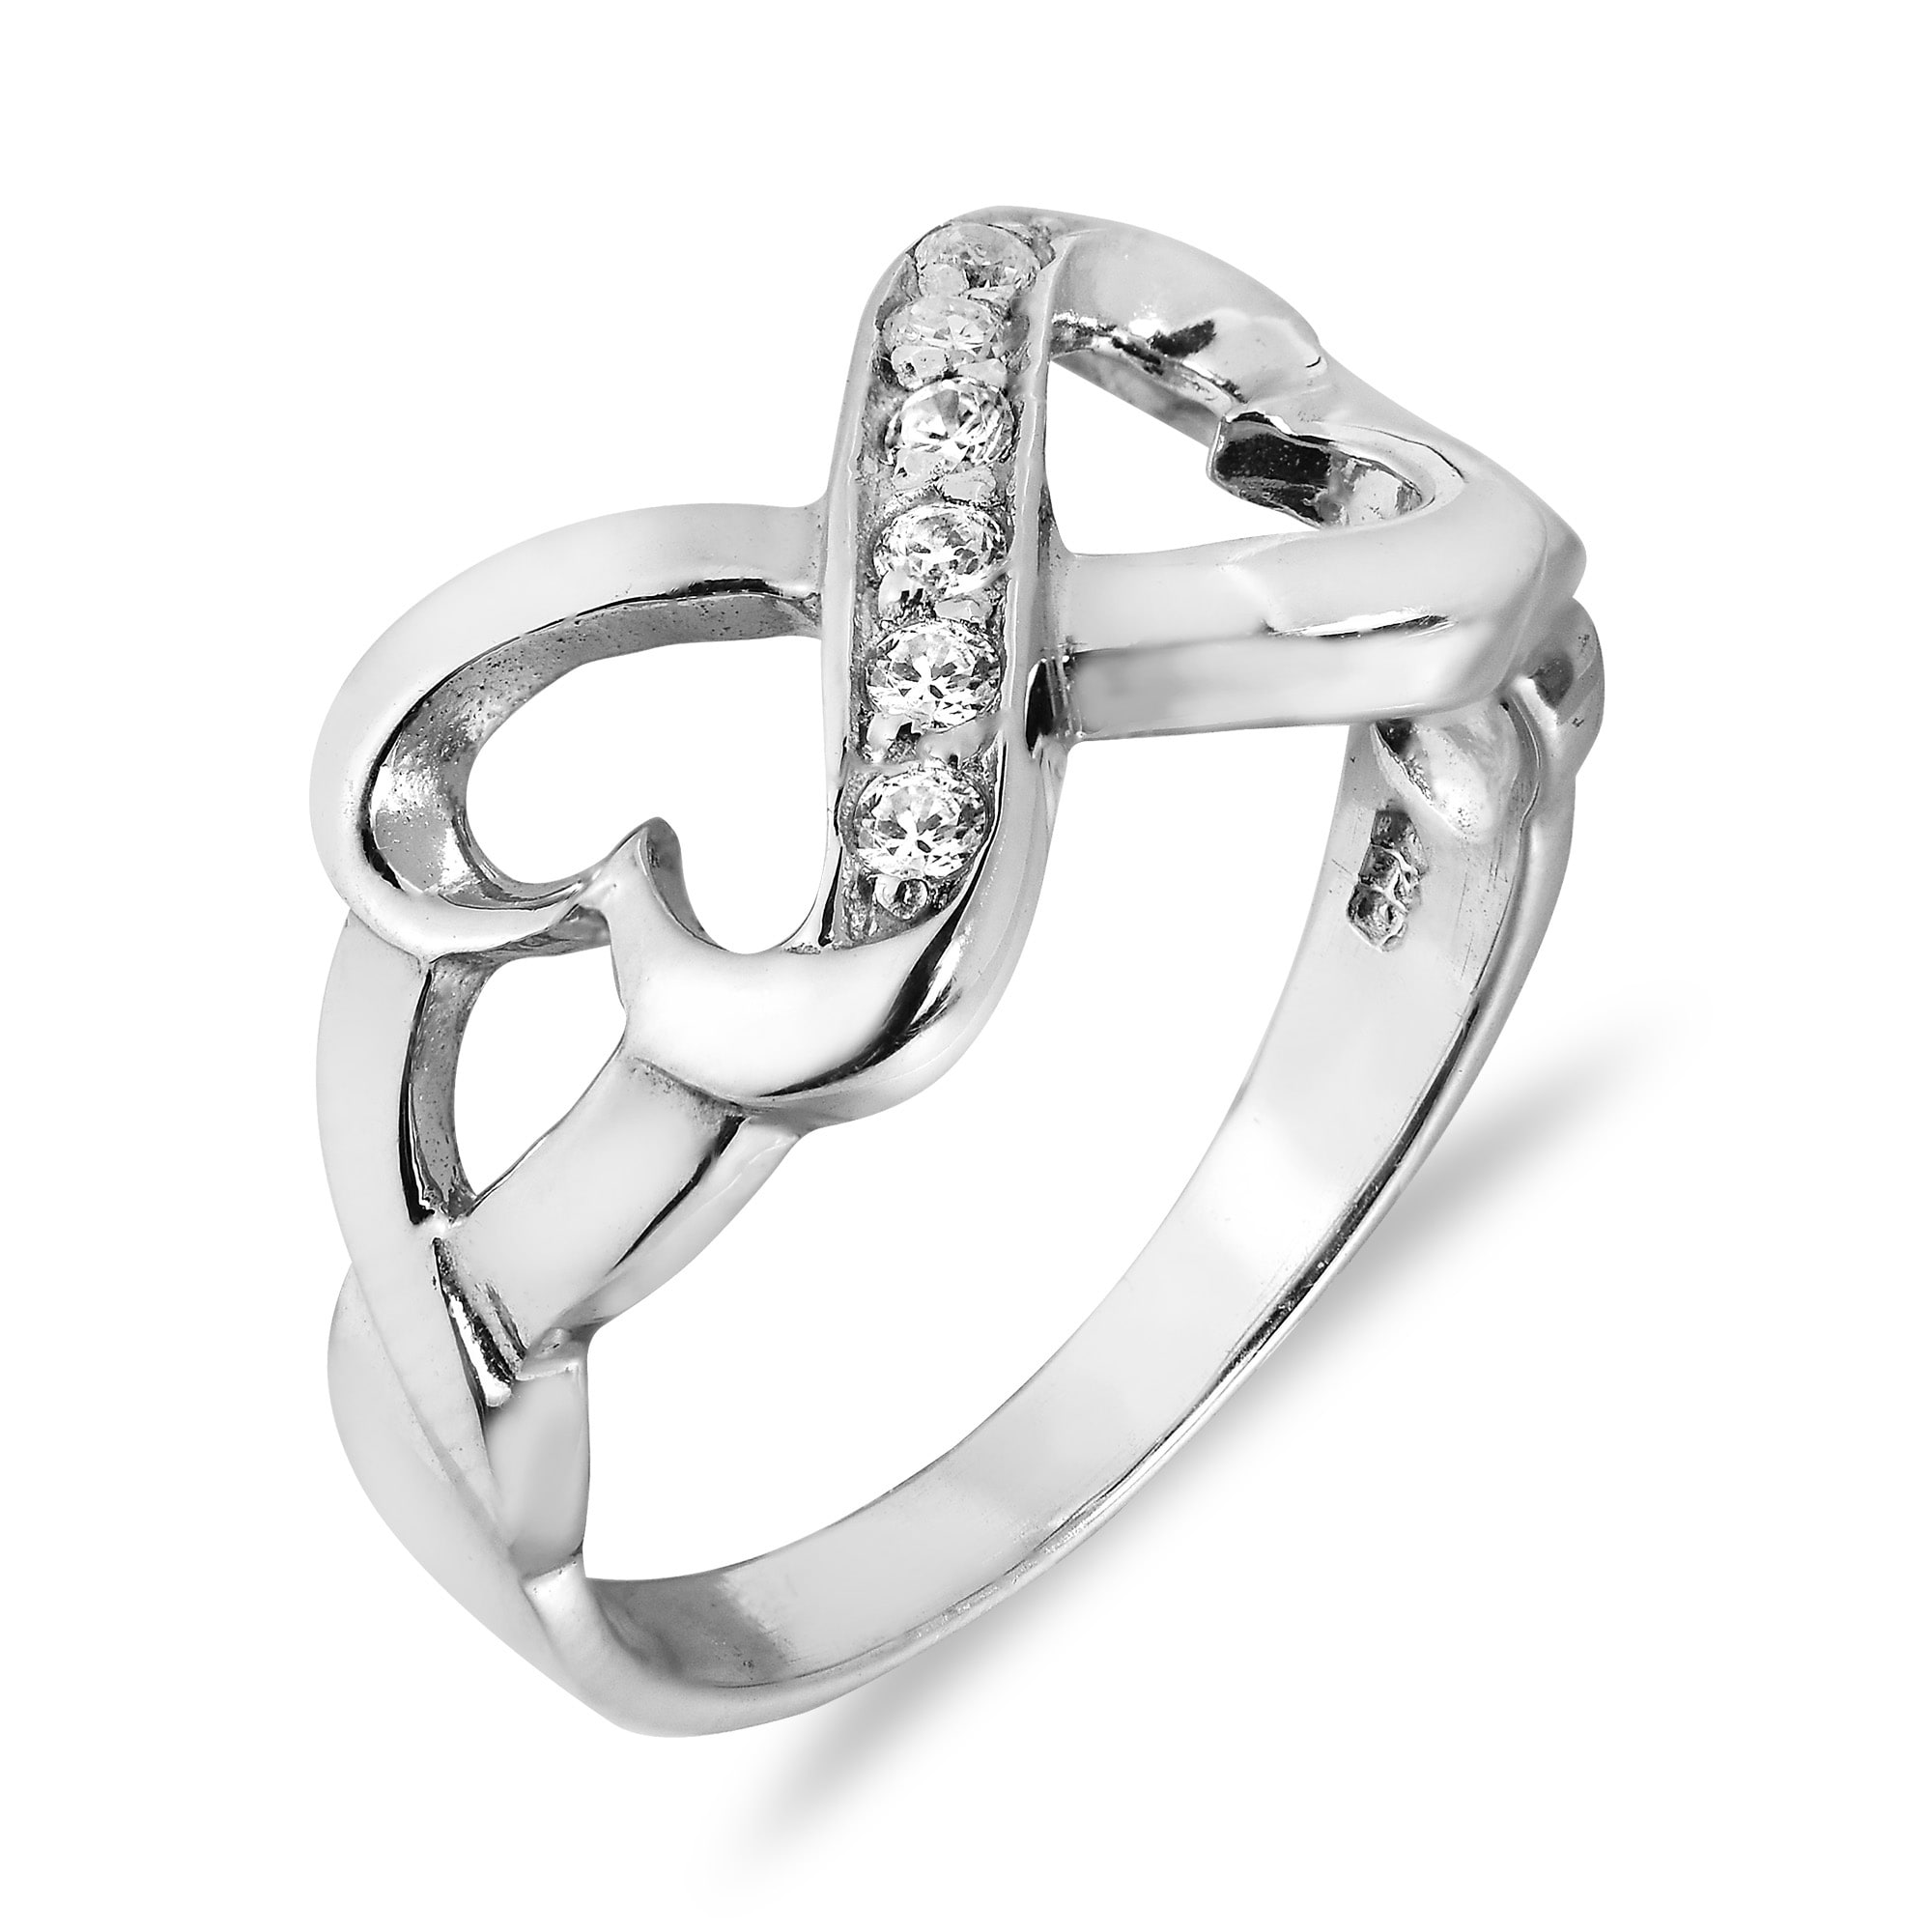 10mm Glitzs Jewels Sterling Silver Cubic Zirconia Hearts Ring 